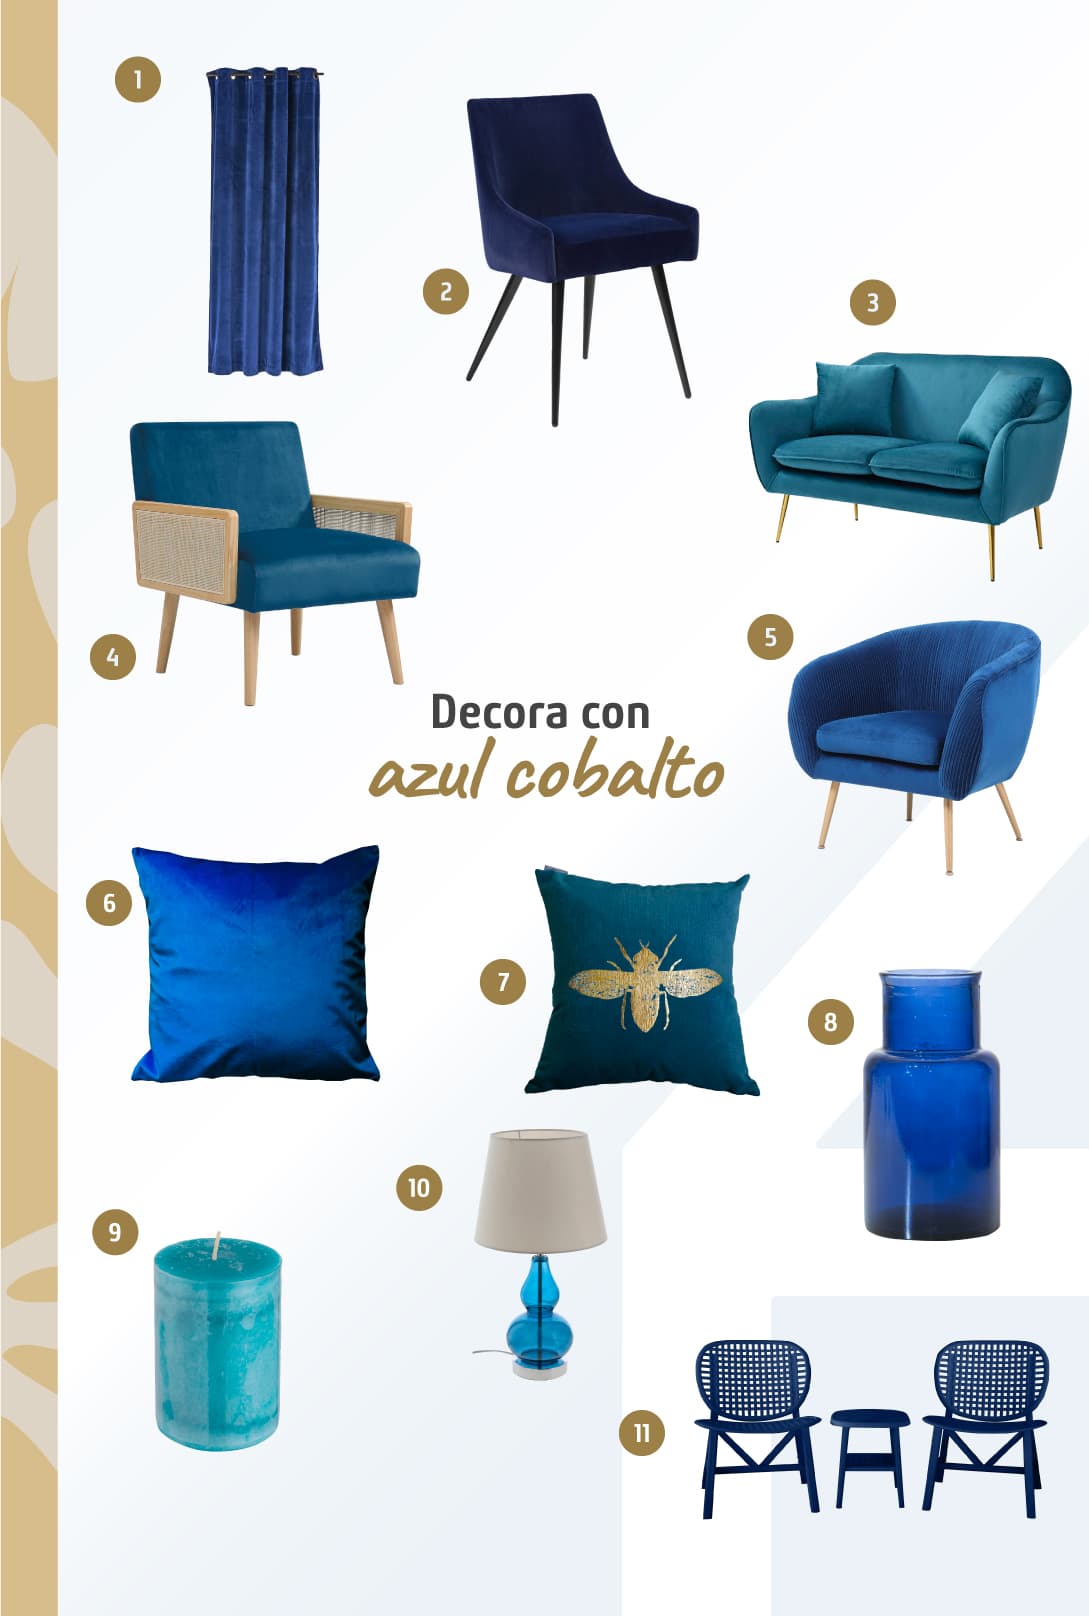 Moodboard de productos color azul cobalto disponibles en Sodimac, como poltronas, sofá, velas y lámparas.